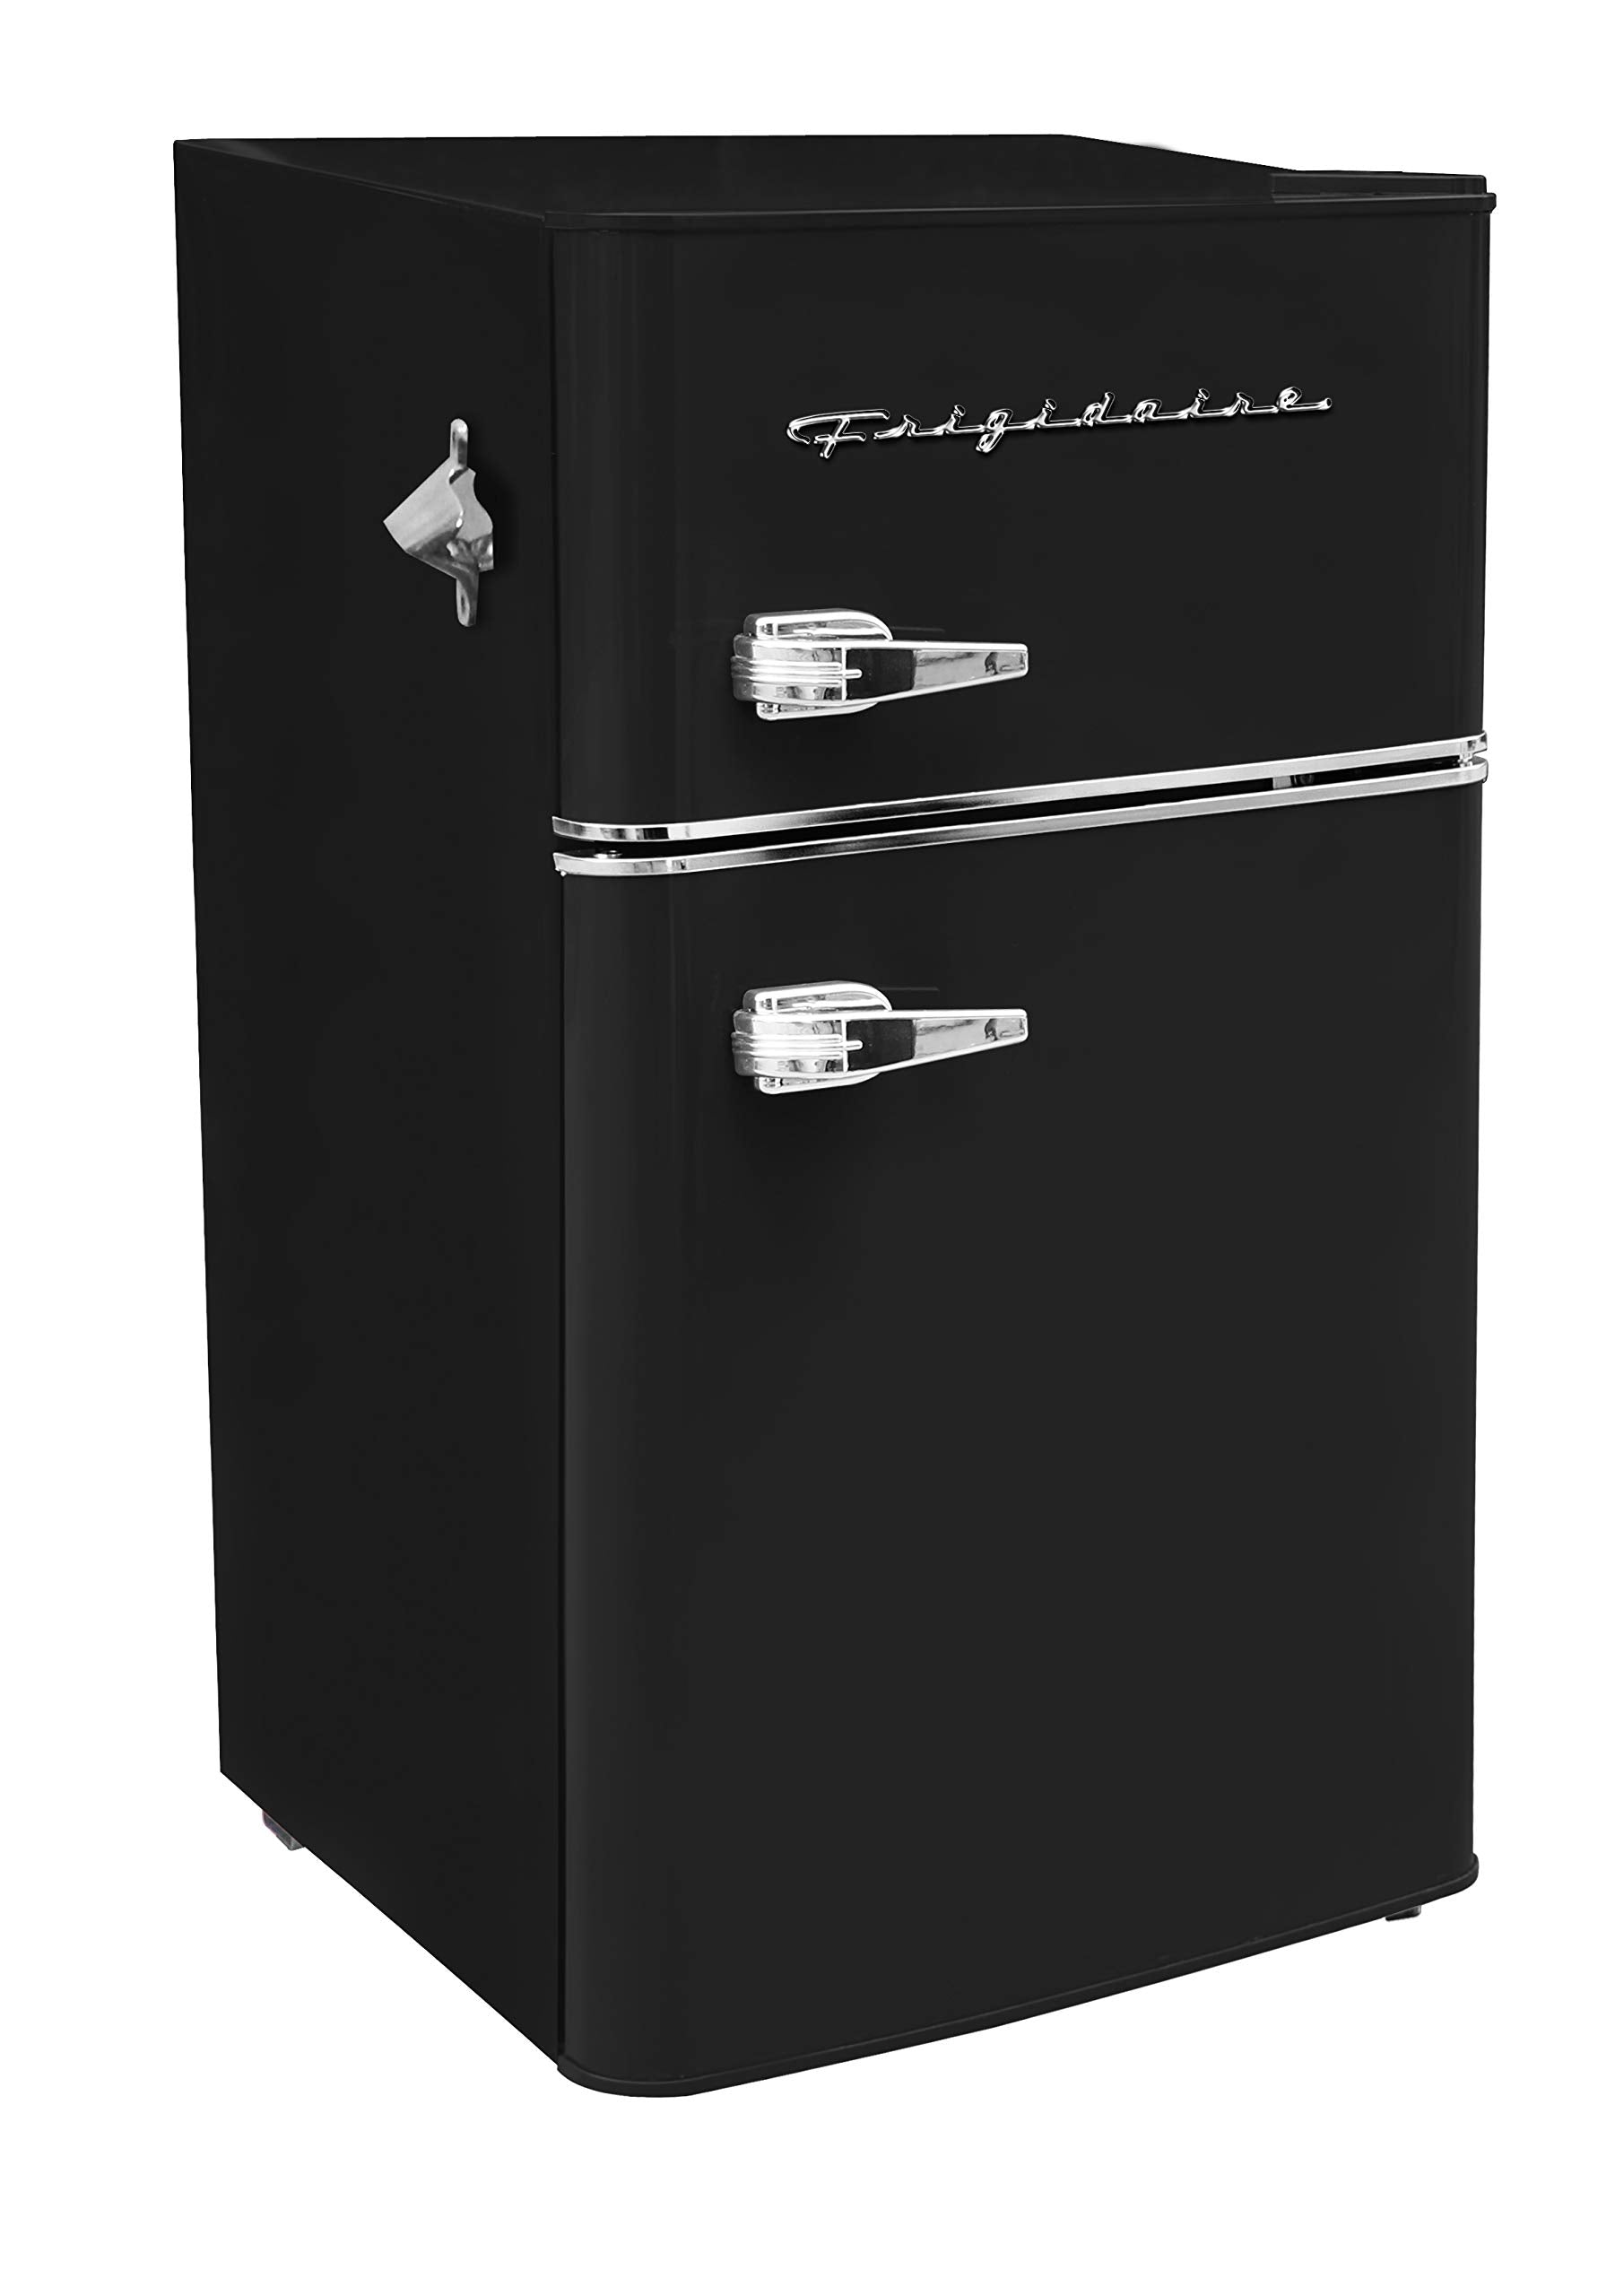 Frigidaire EFR840-BLACK-COM Compact Refrigerator, 3.1, Black